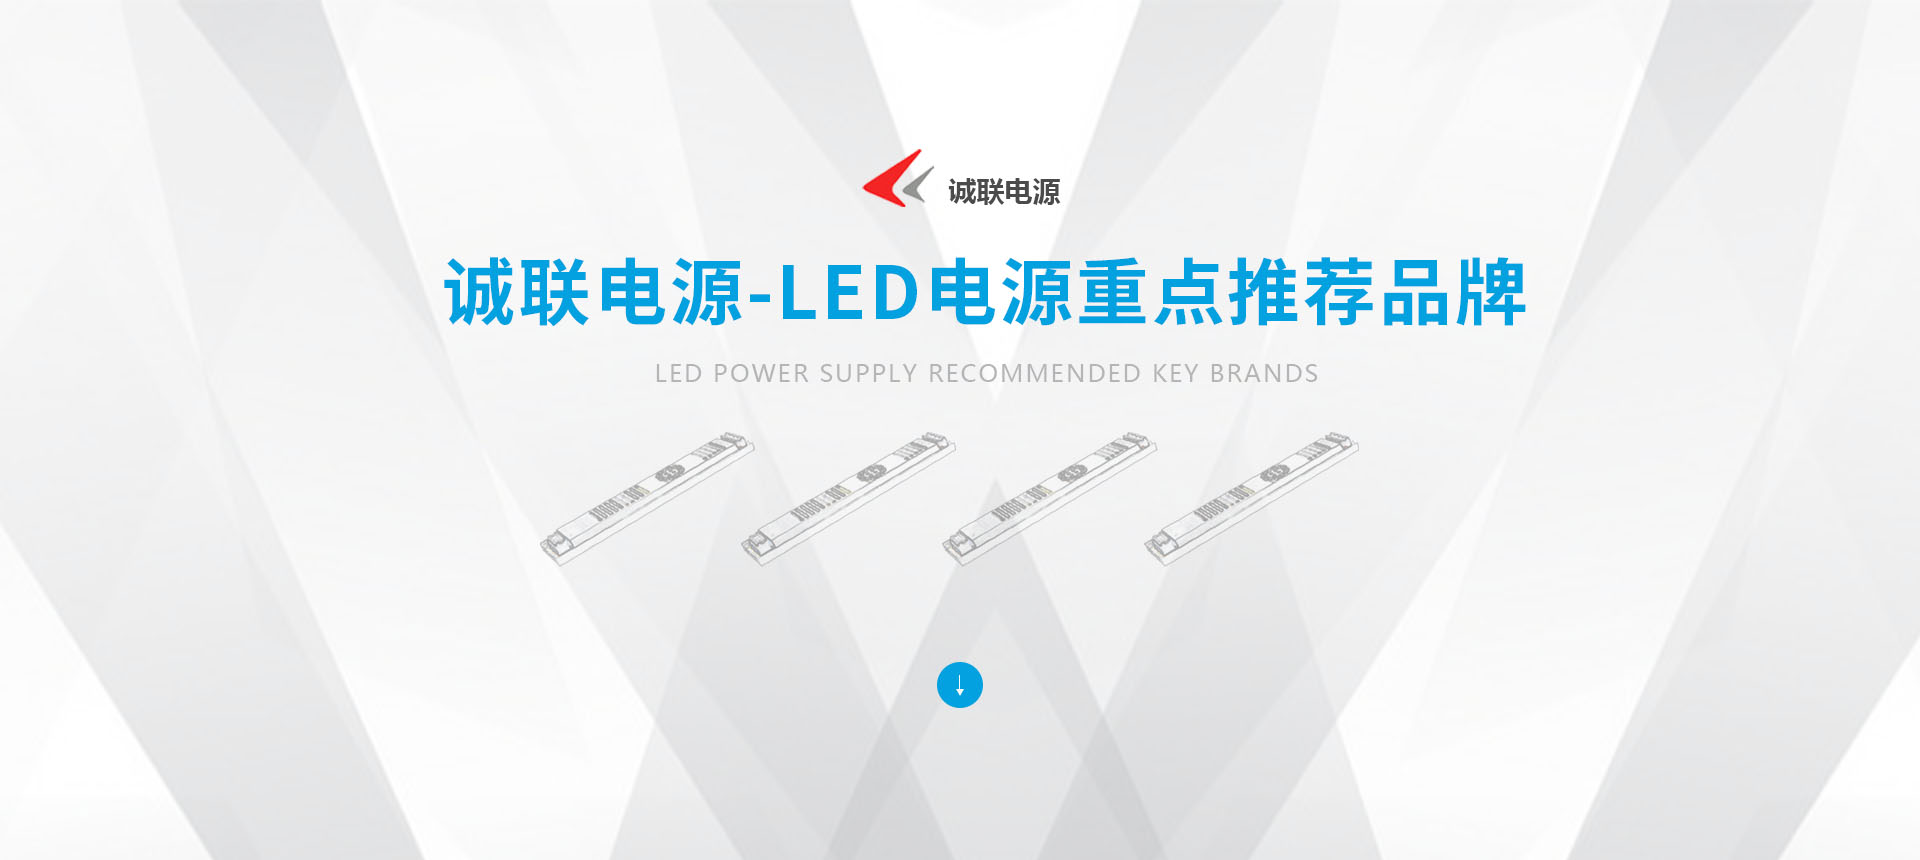 誠聯電源-LED電源重點推薦品牌